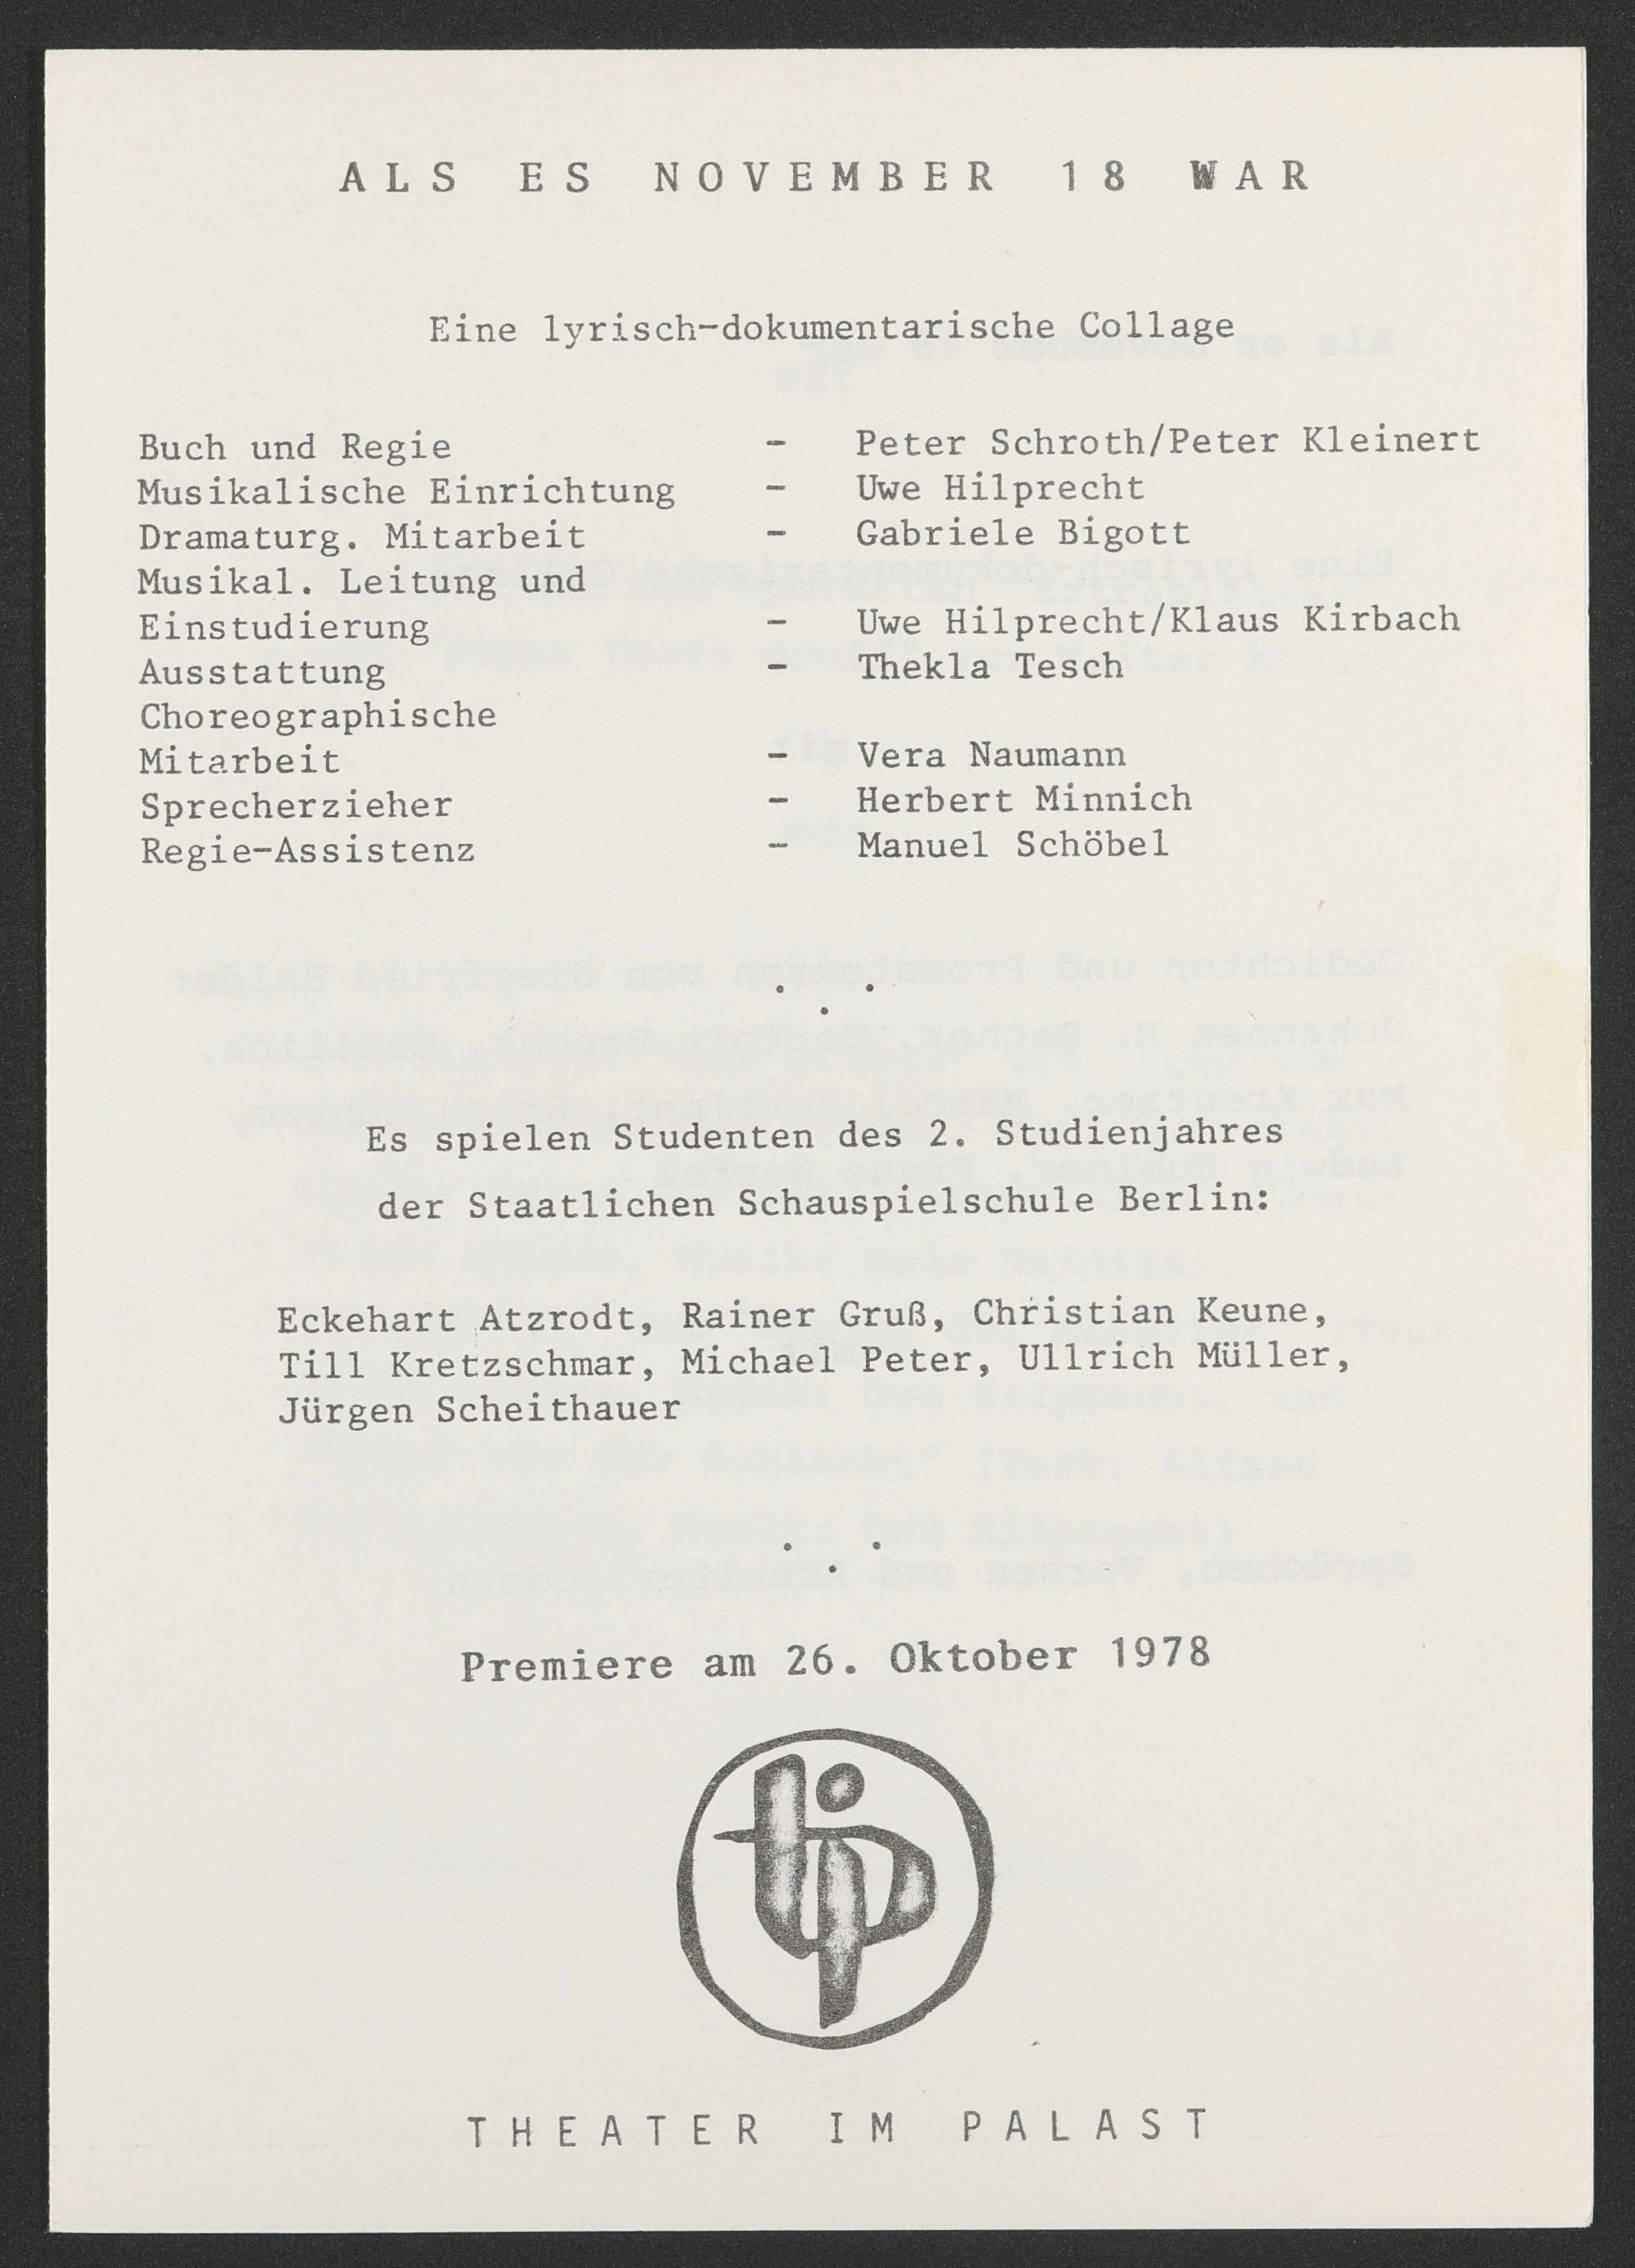 Programmheft zu "Als es November 18 war" am Theater im Palast 1978 (Hochschule für Schauspielkunst Ernst Busch Berlin RR-F)